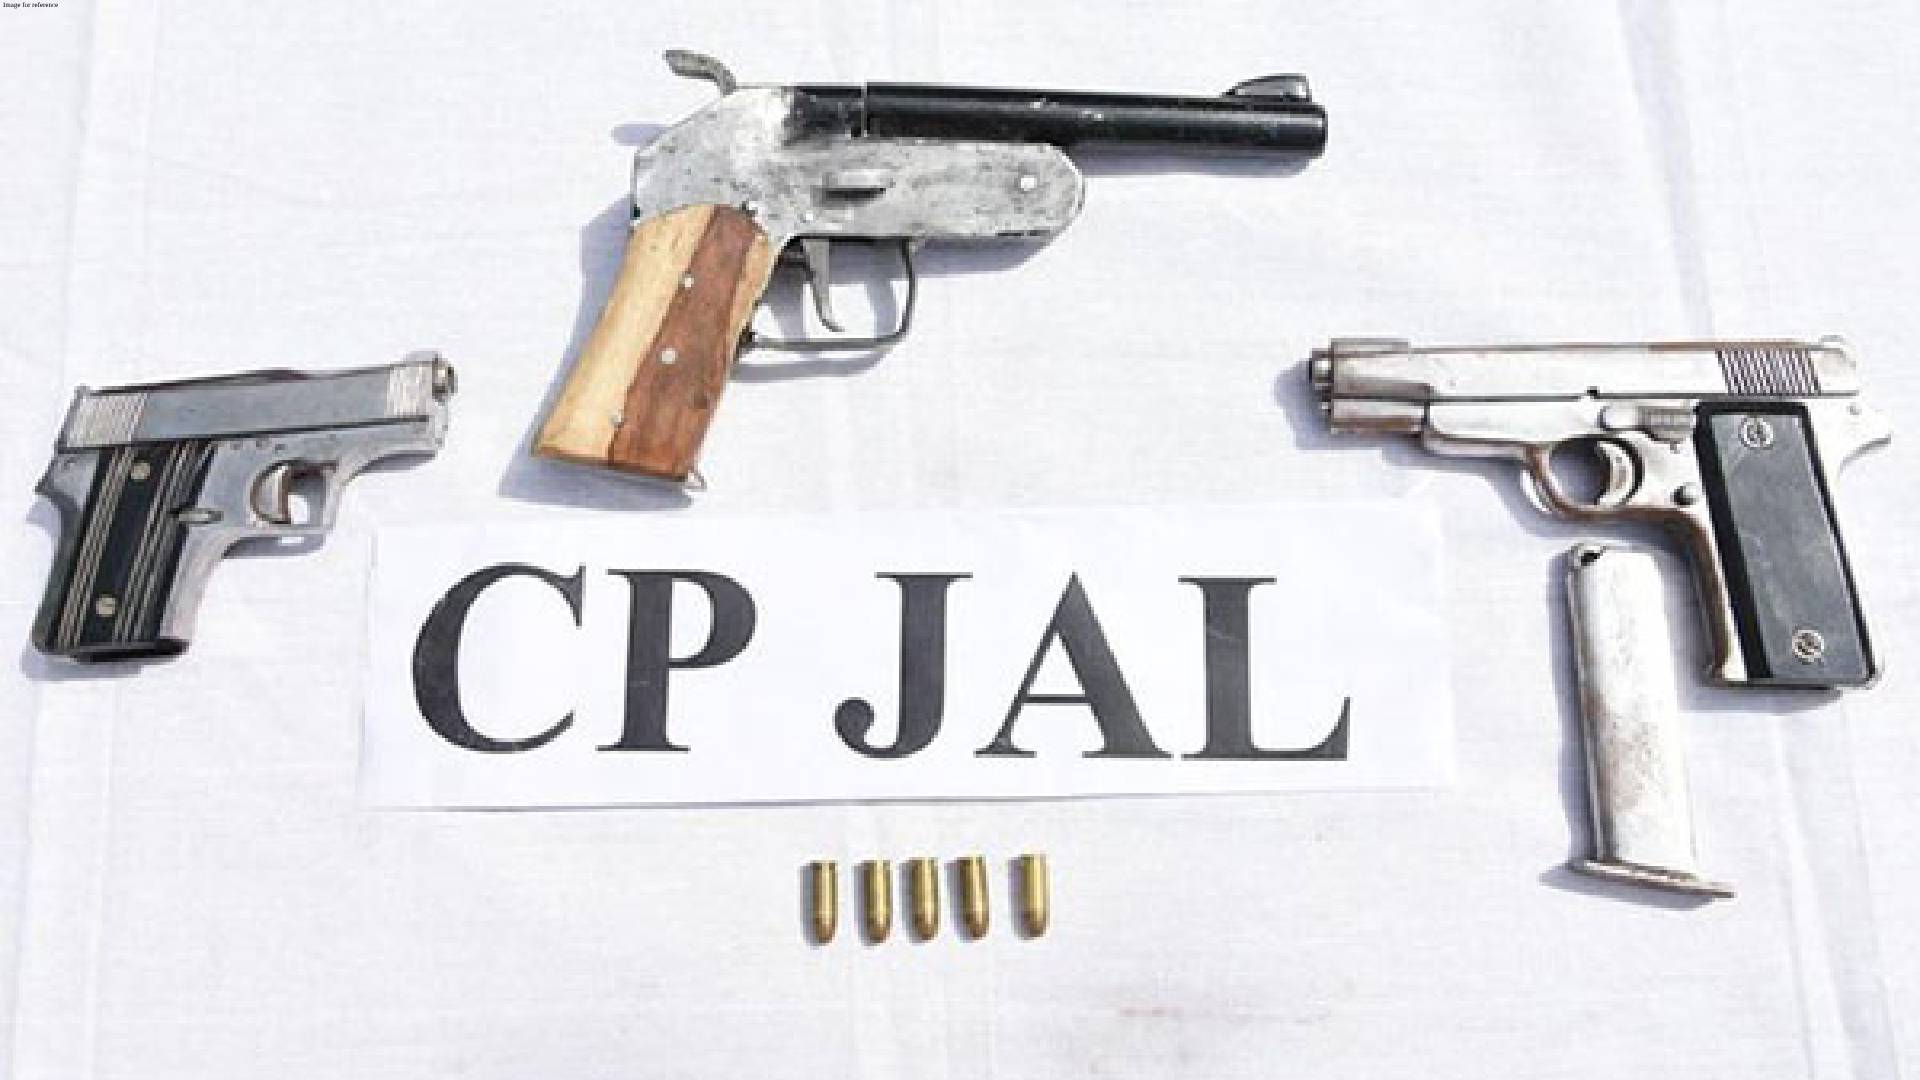 Punjab: Police arrest one member of Vicky Gounder gang, seize 3 weapons